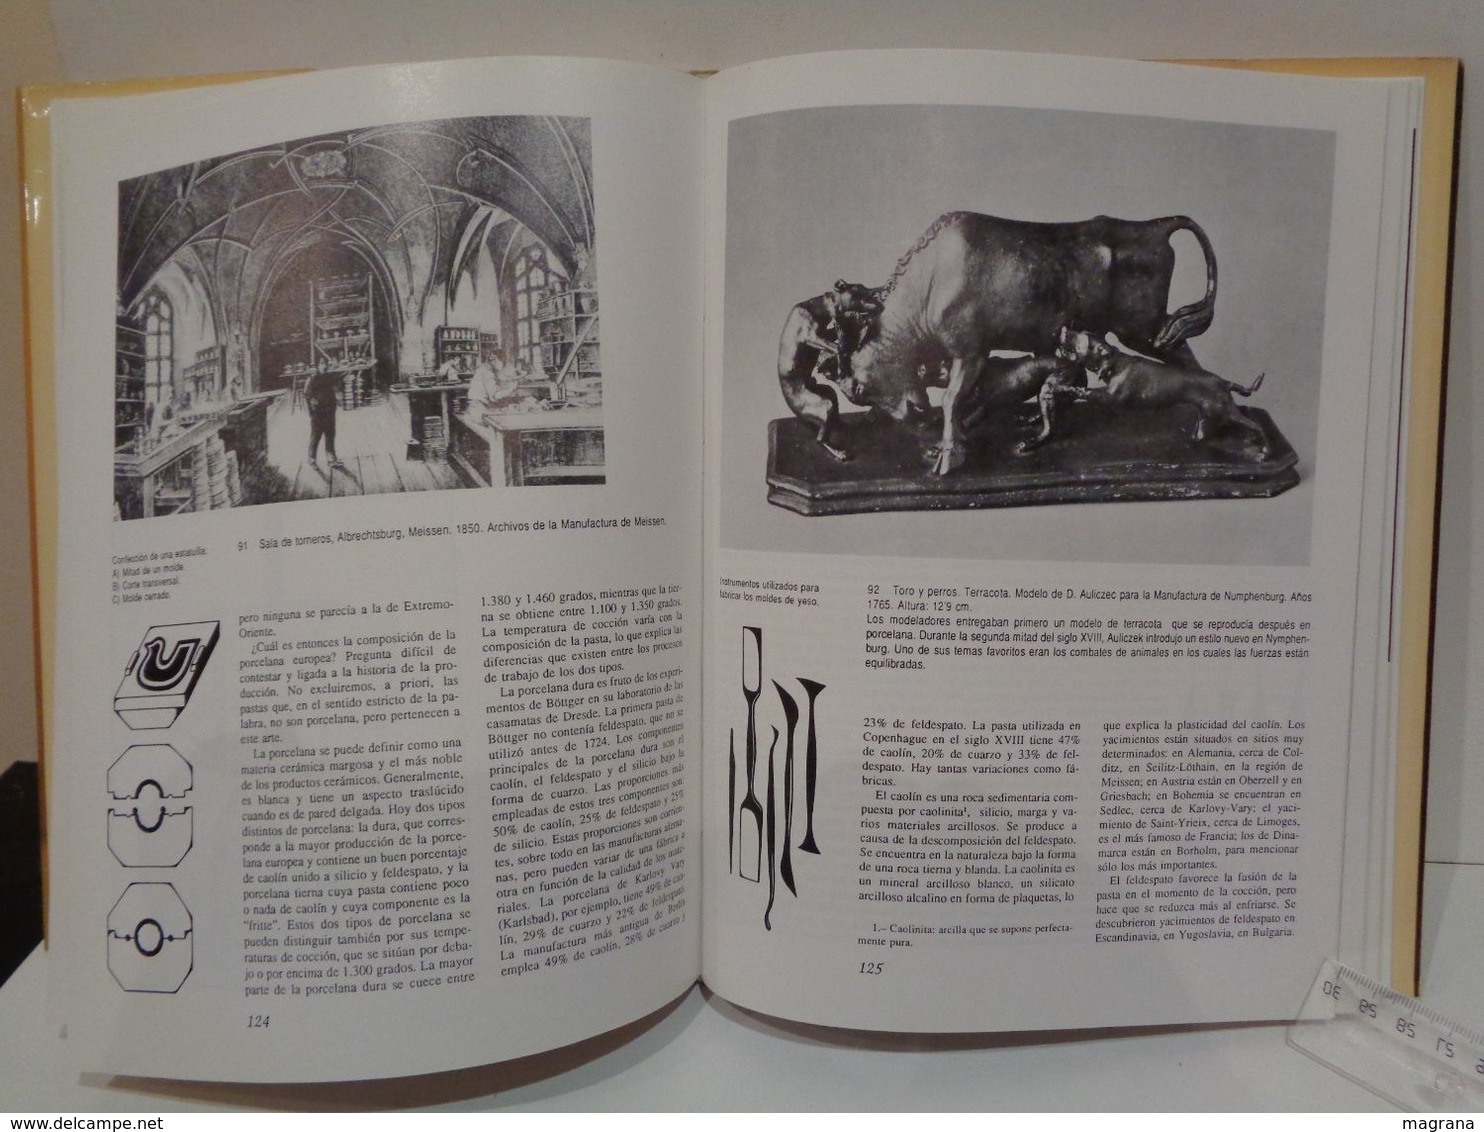 El arte de la porcelana en Europa. Jan Divis. Editorial LIBSA. Año 1989. 232 pp.